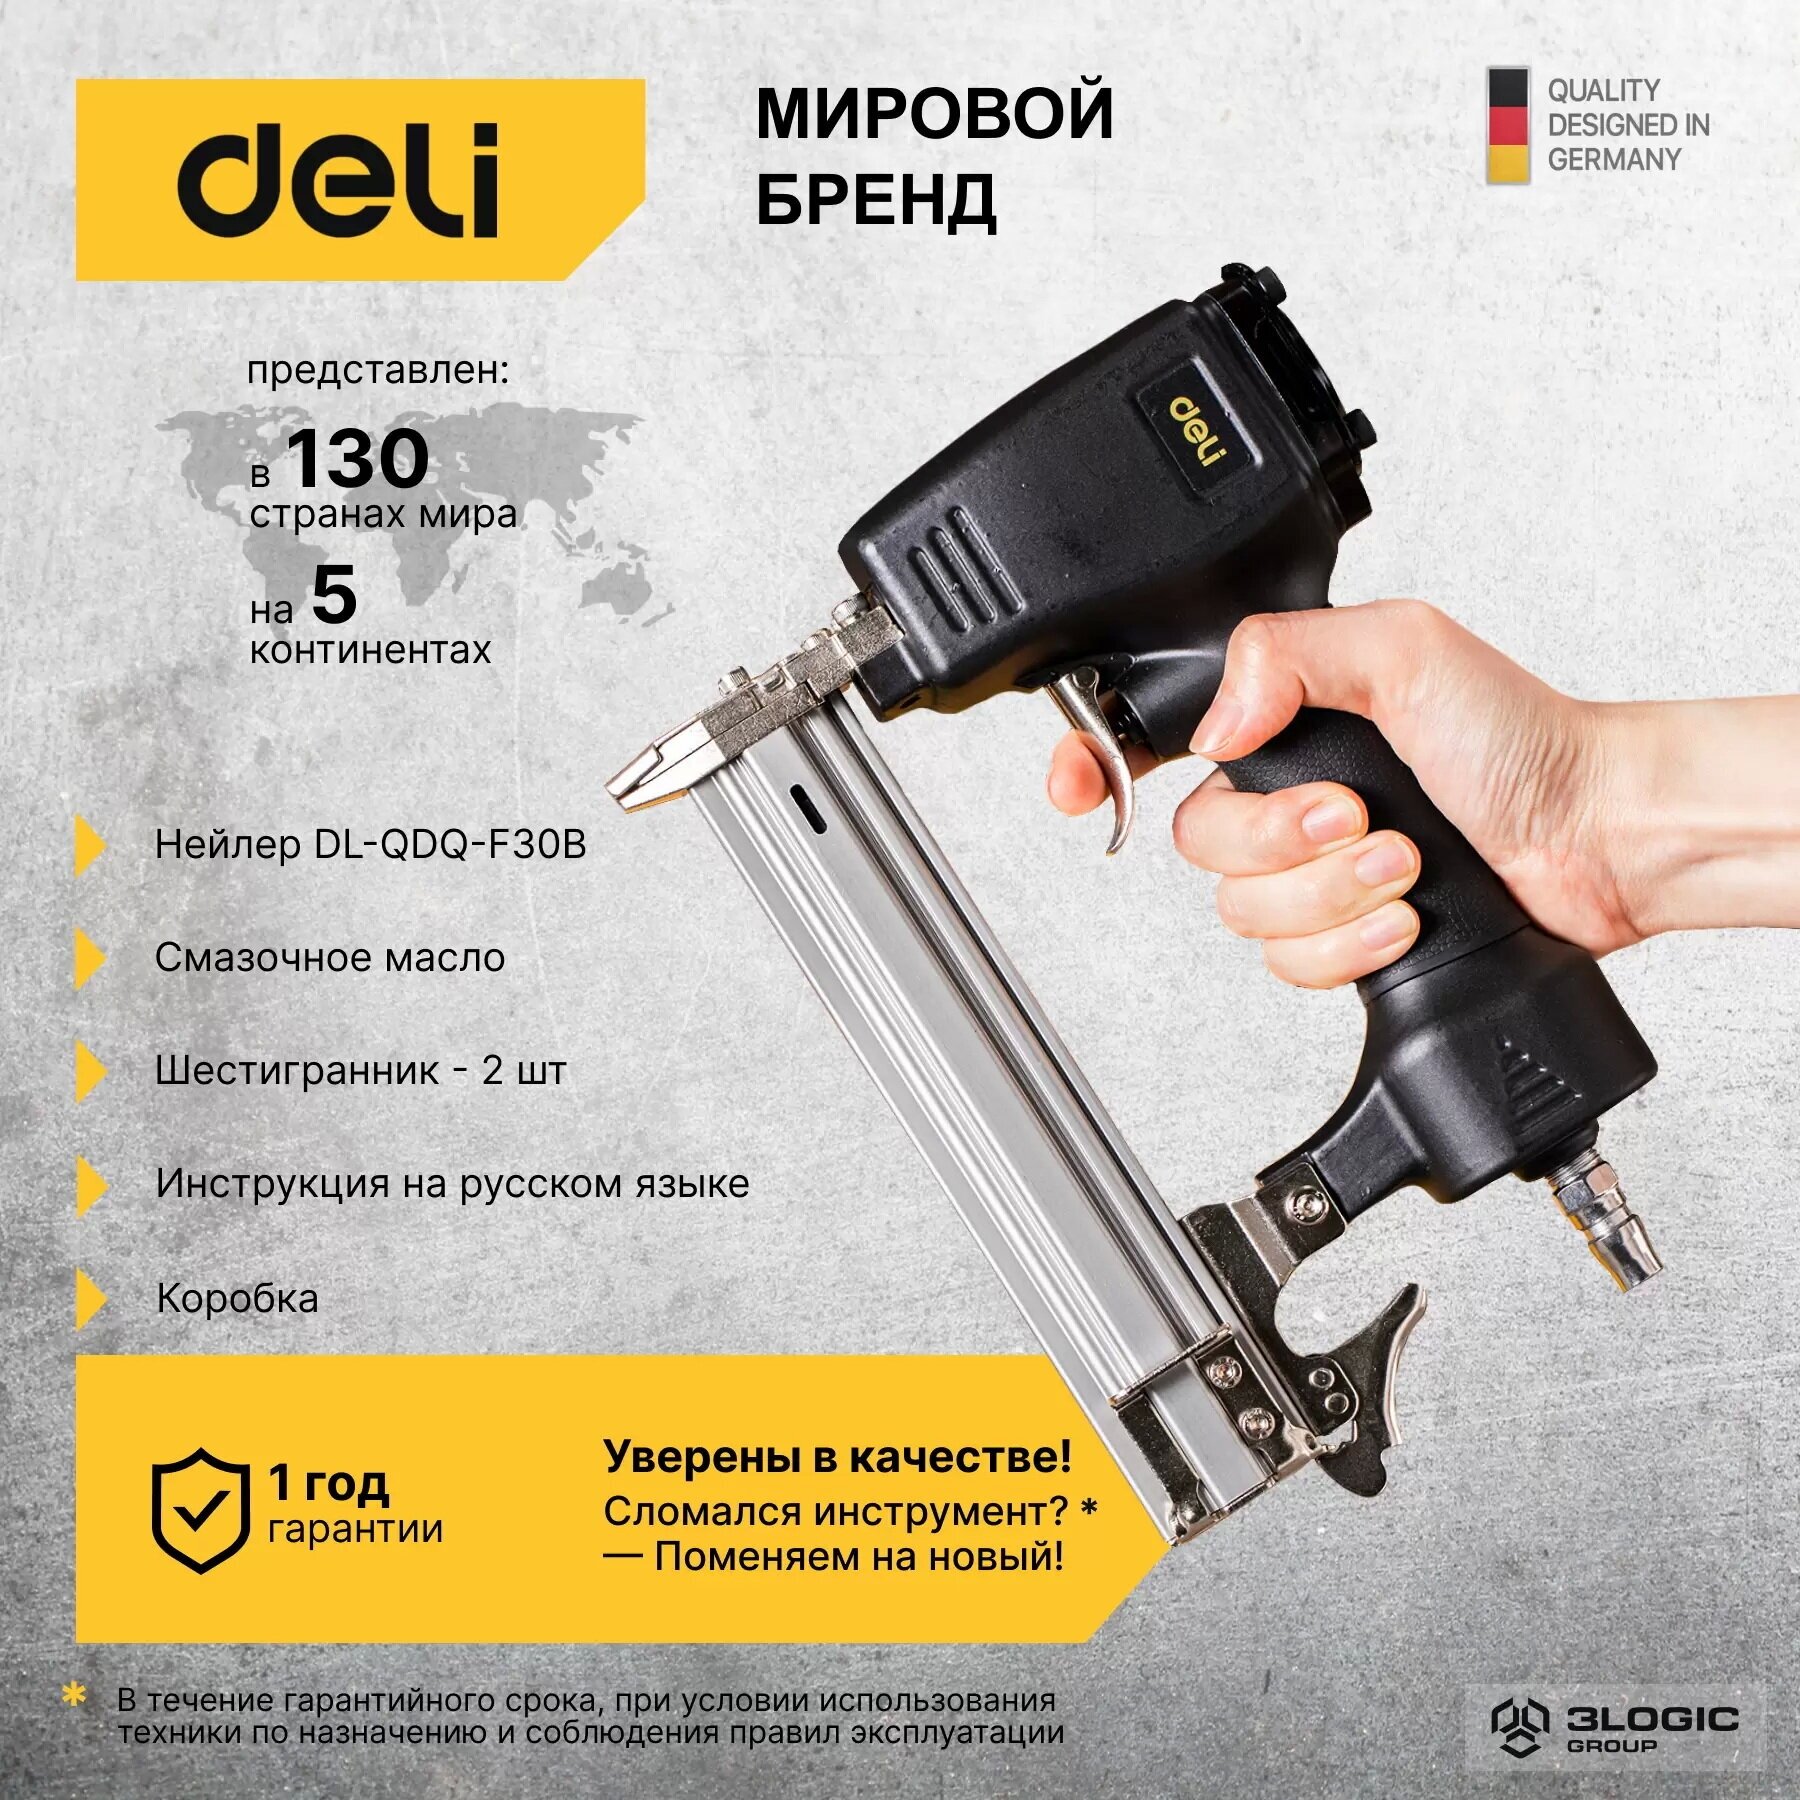 Нейлер (гвоздезабивной пистолет) пневматический Deli DL-QDQ-F30B (4-7 атм, вместимость магазина 100 гвоздей, длина гвоздей 10-30мм)